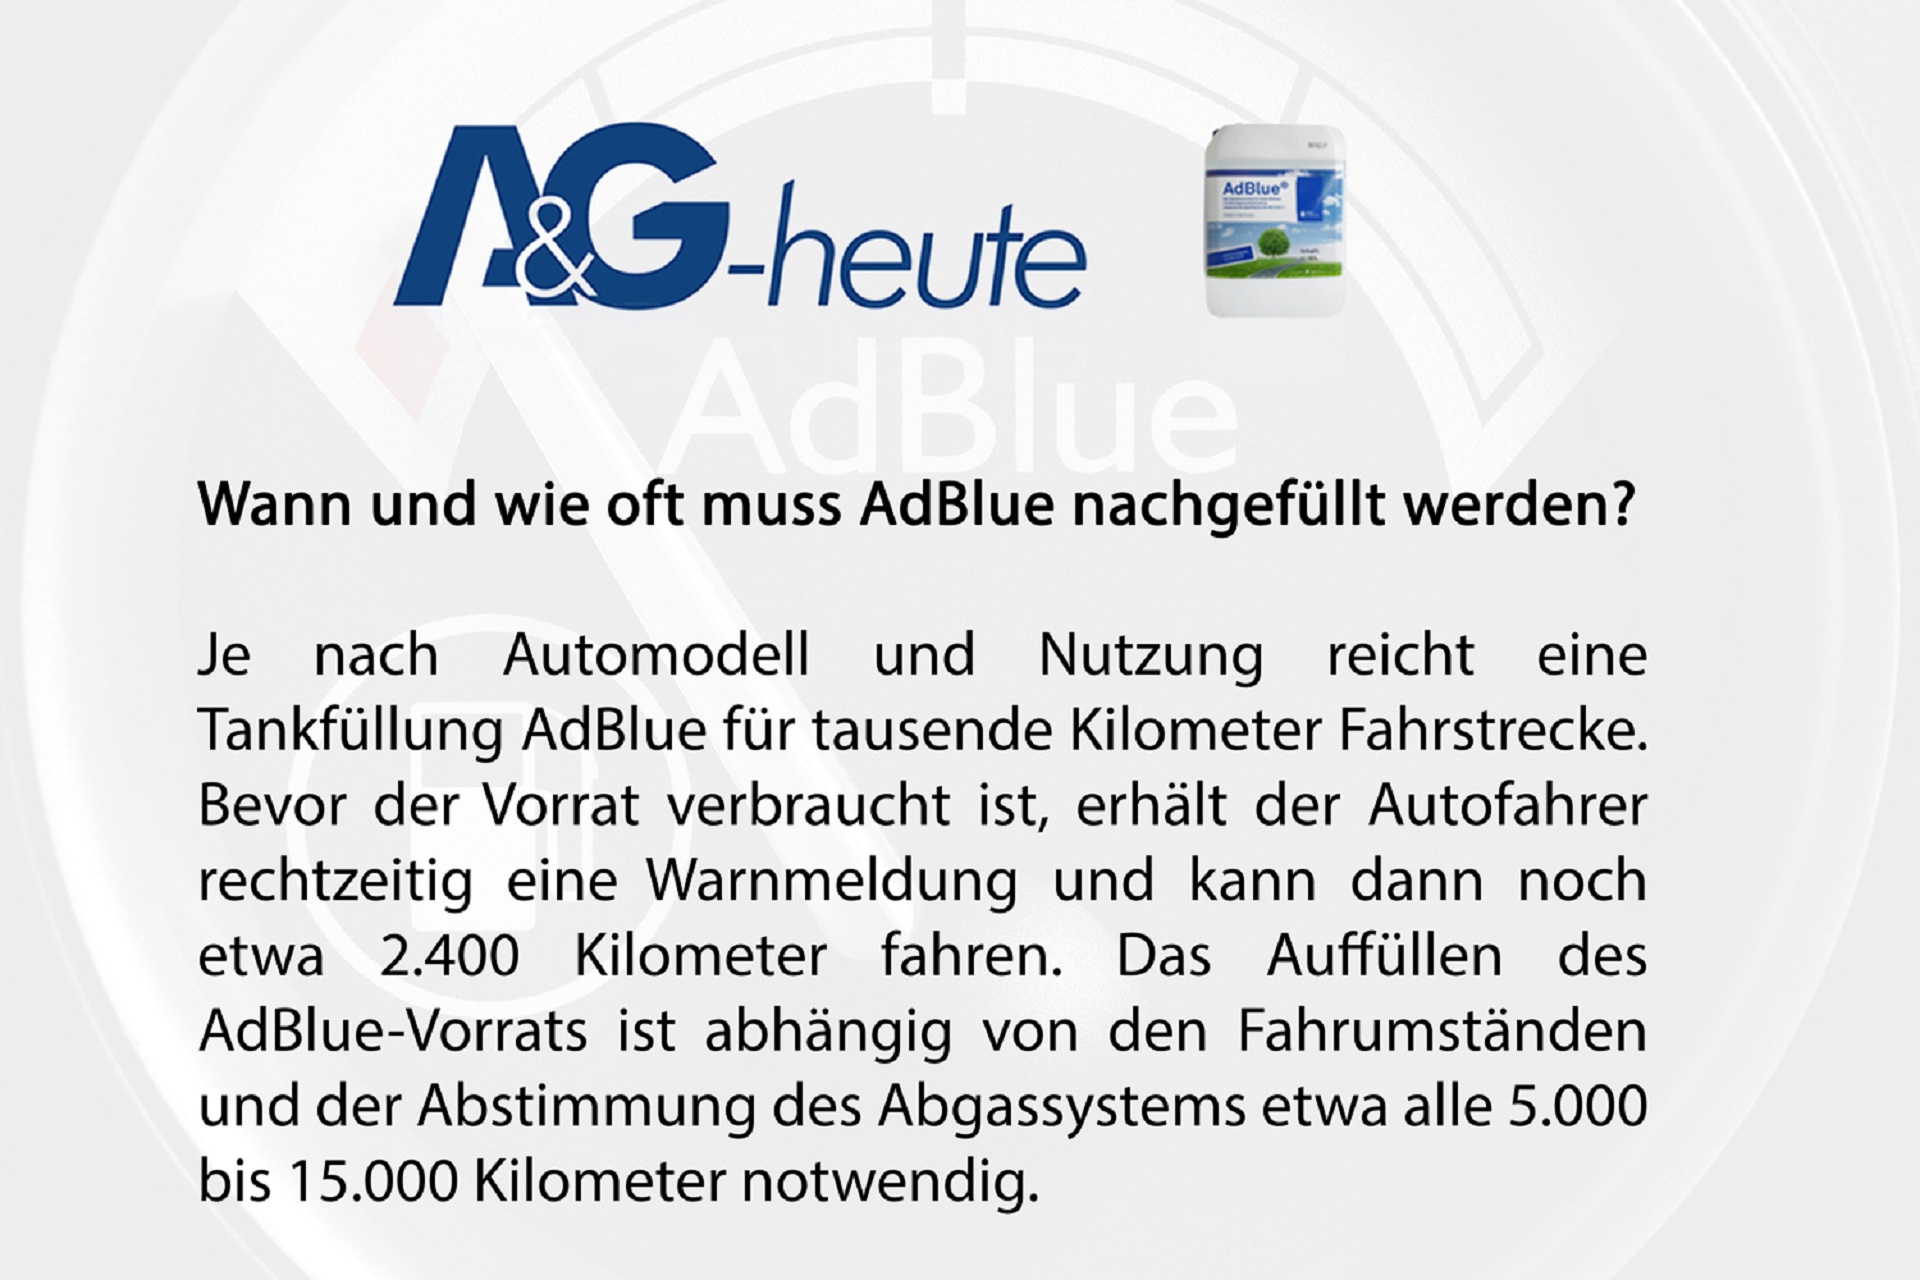 AdBlue® 20 Liter Kanister : : Auto & Motorrad